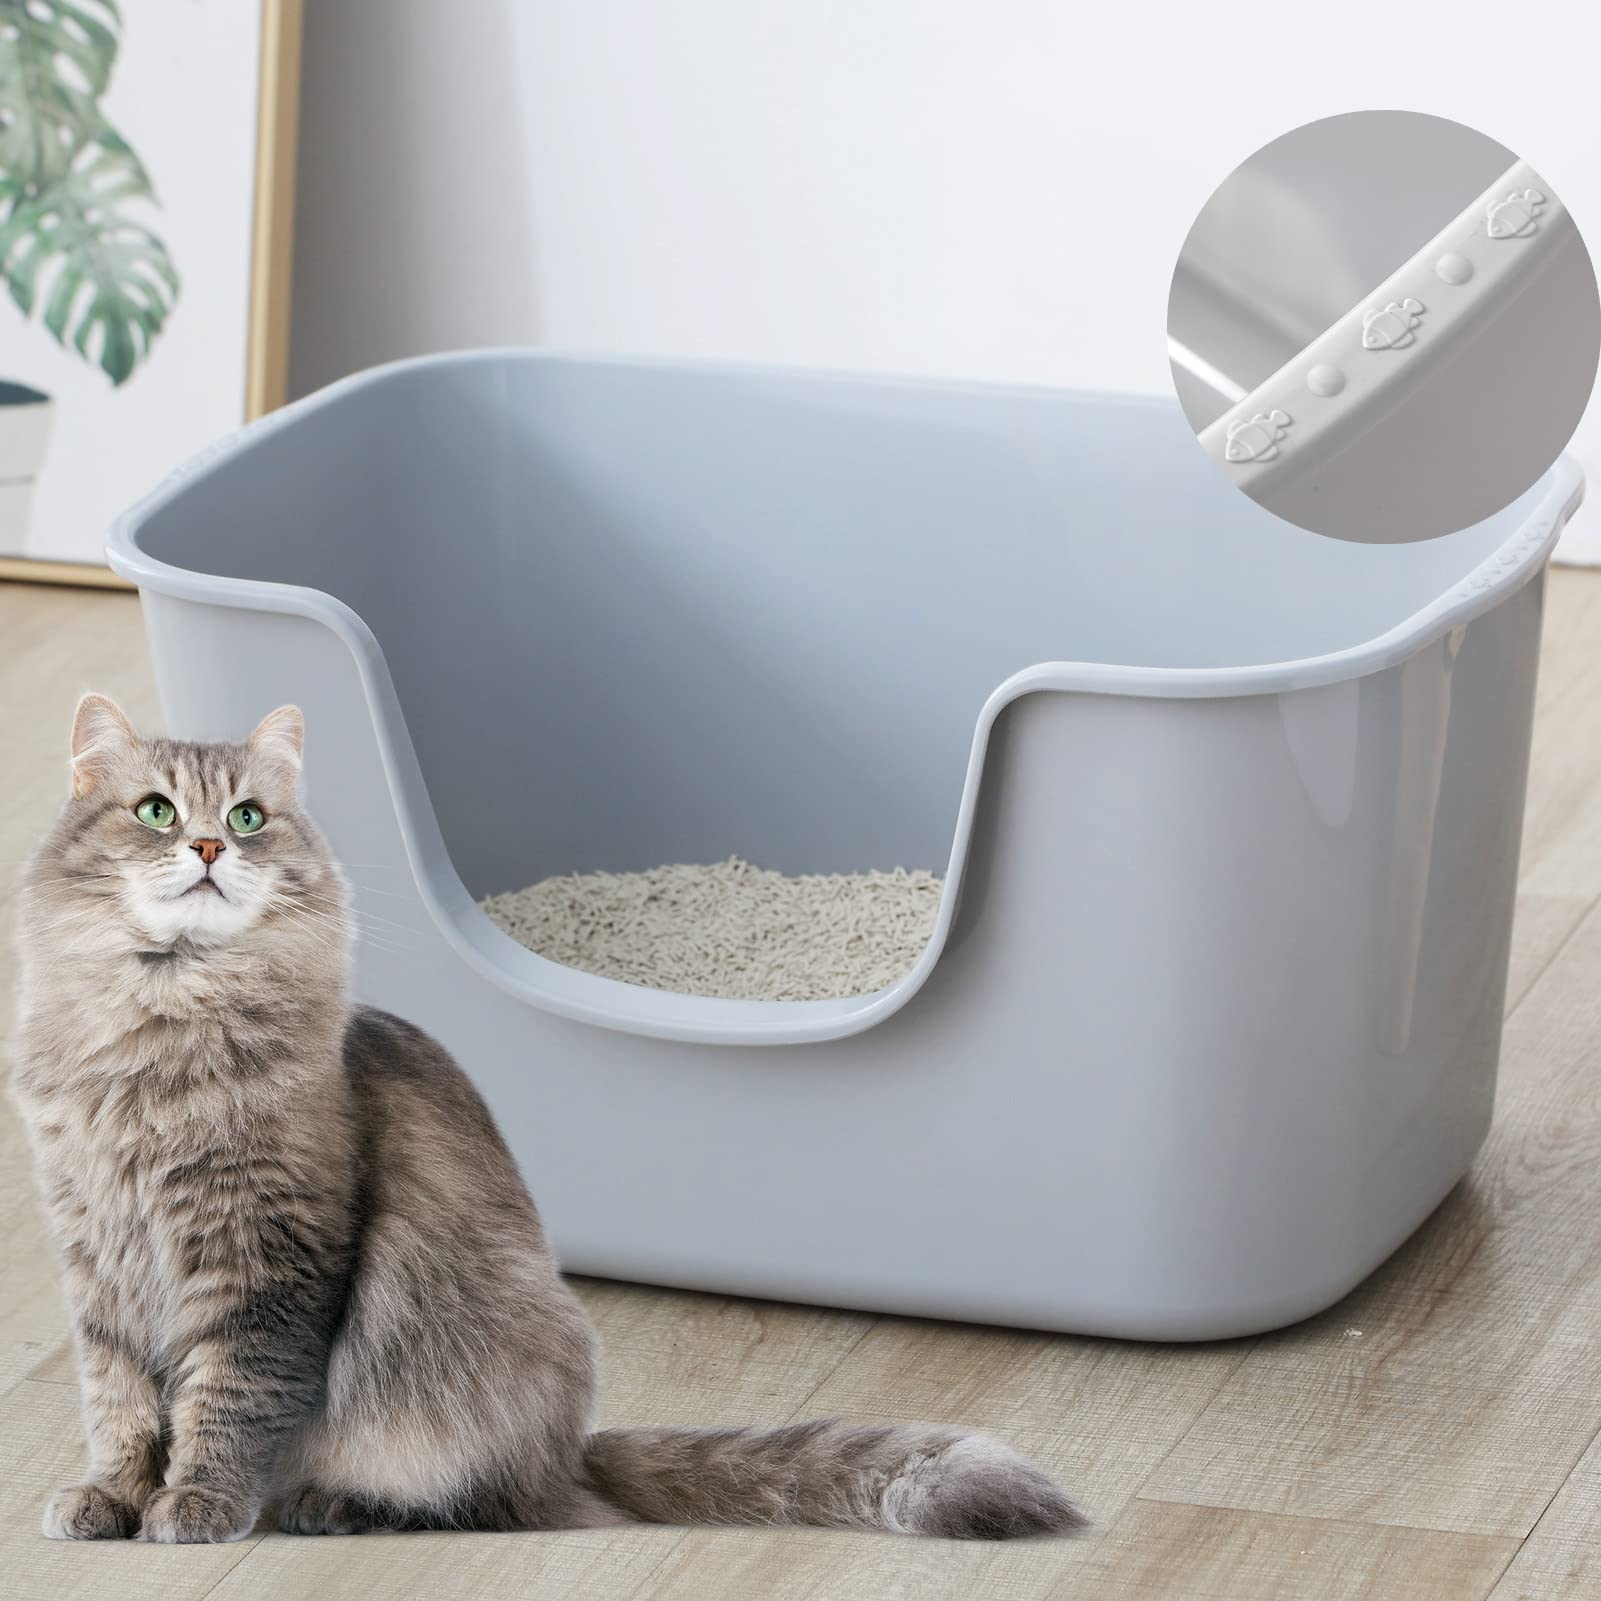 Smart Paws 大きな猫のトイレ,かわい猫のトイレ64x42x33cm (クリーム)